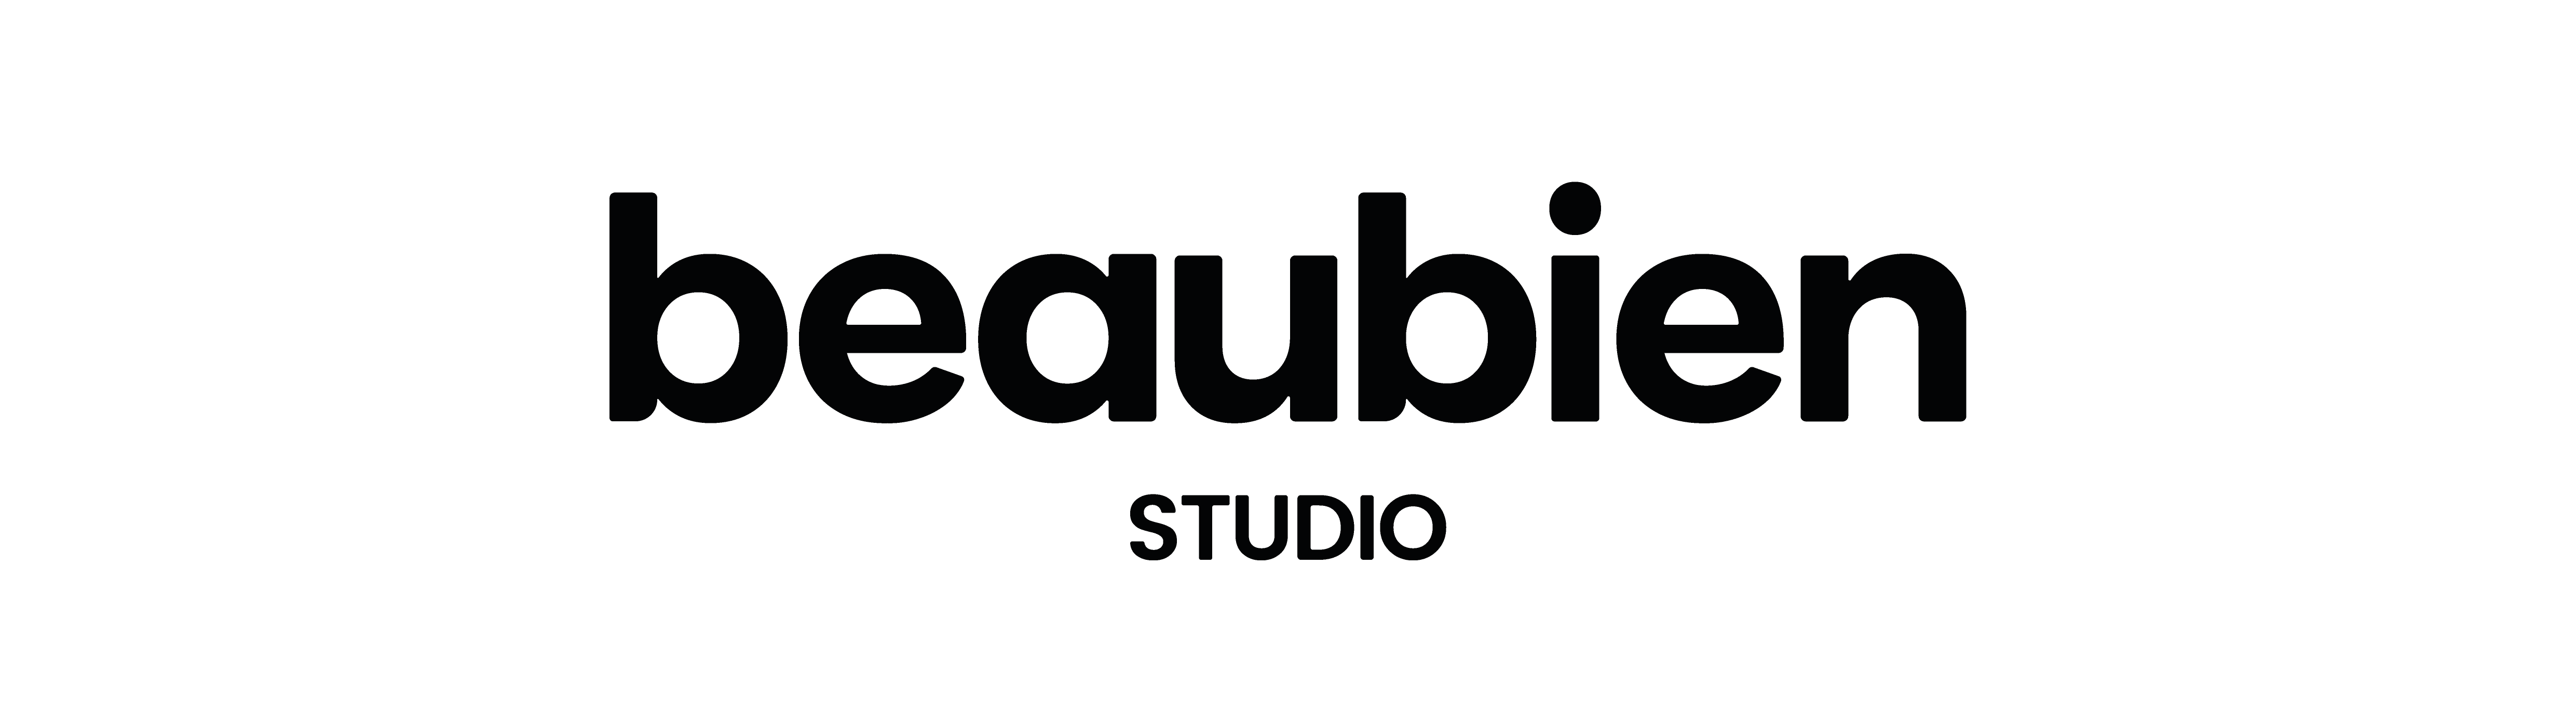 Beaubien Studio